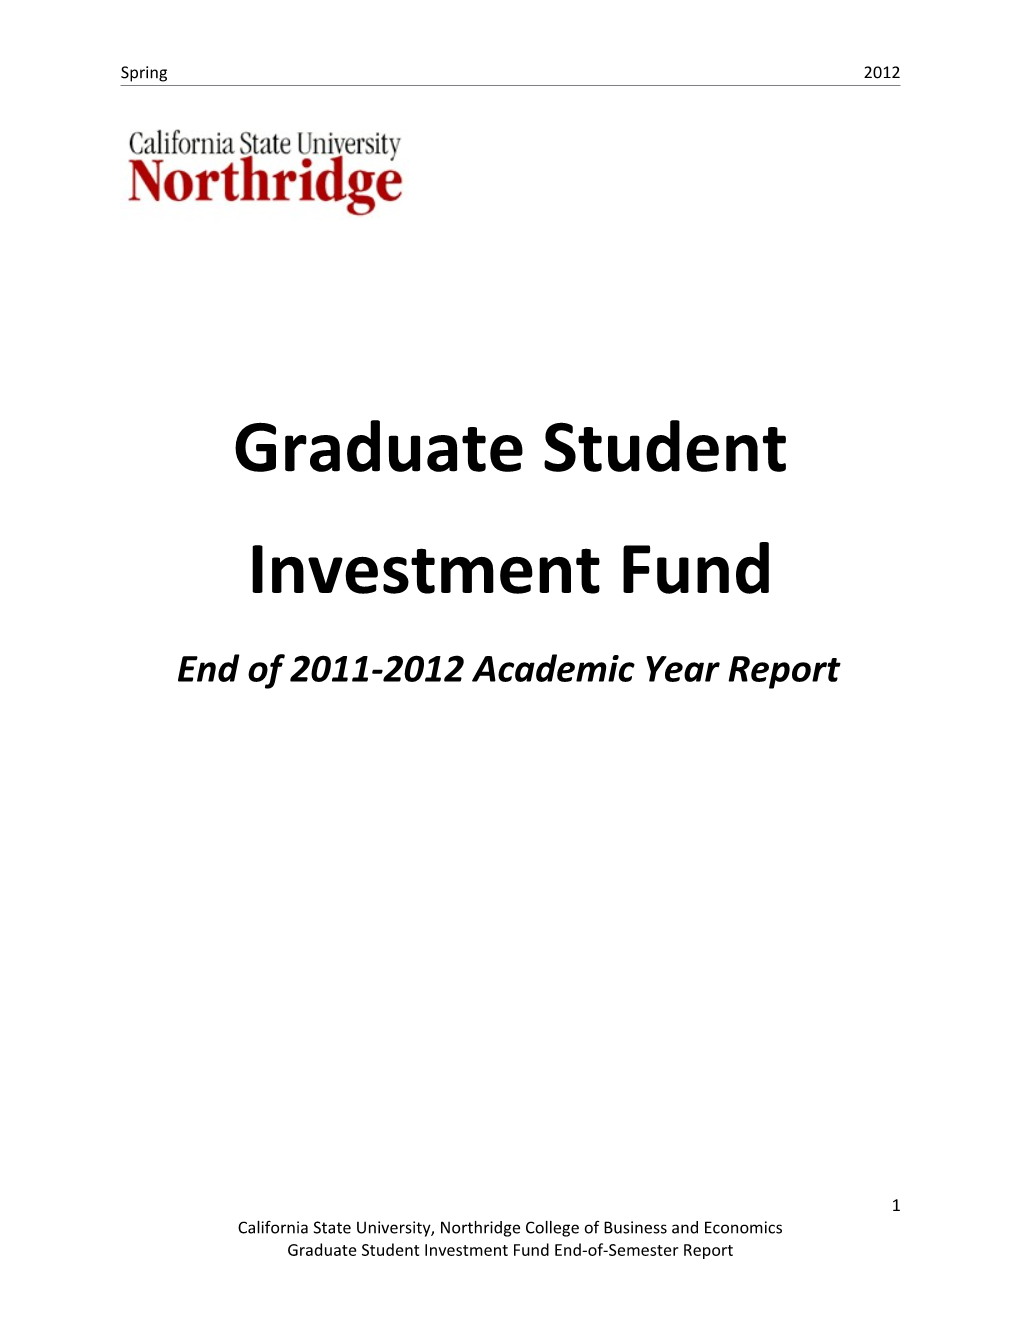 Portfolio Class Report Spring 2012